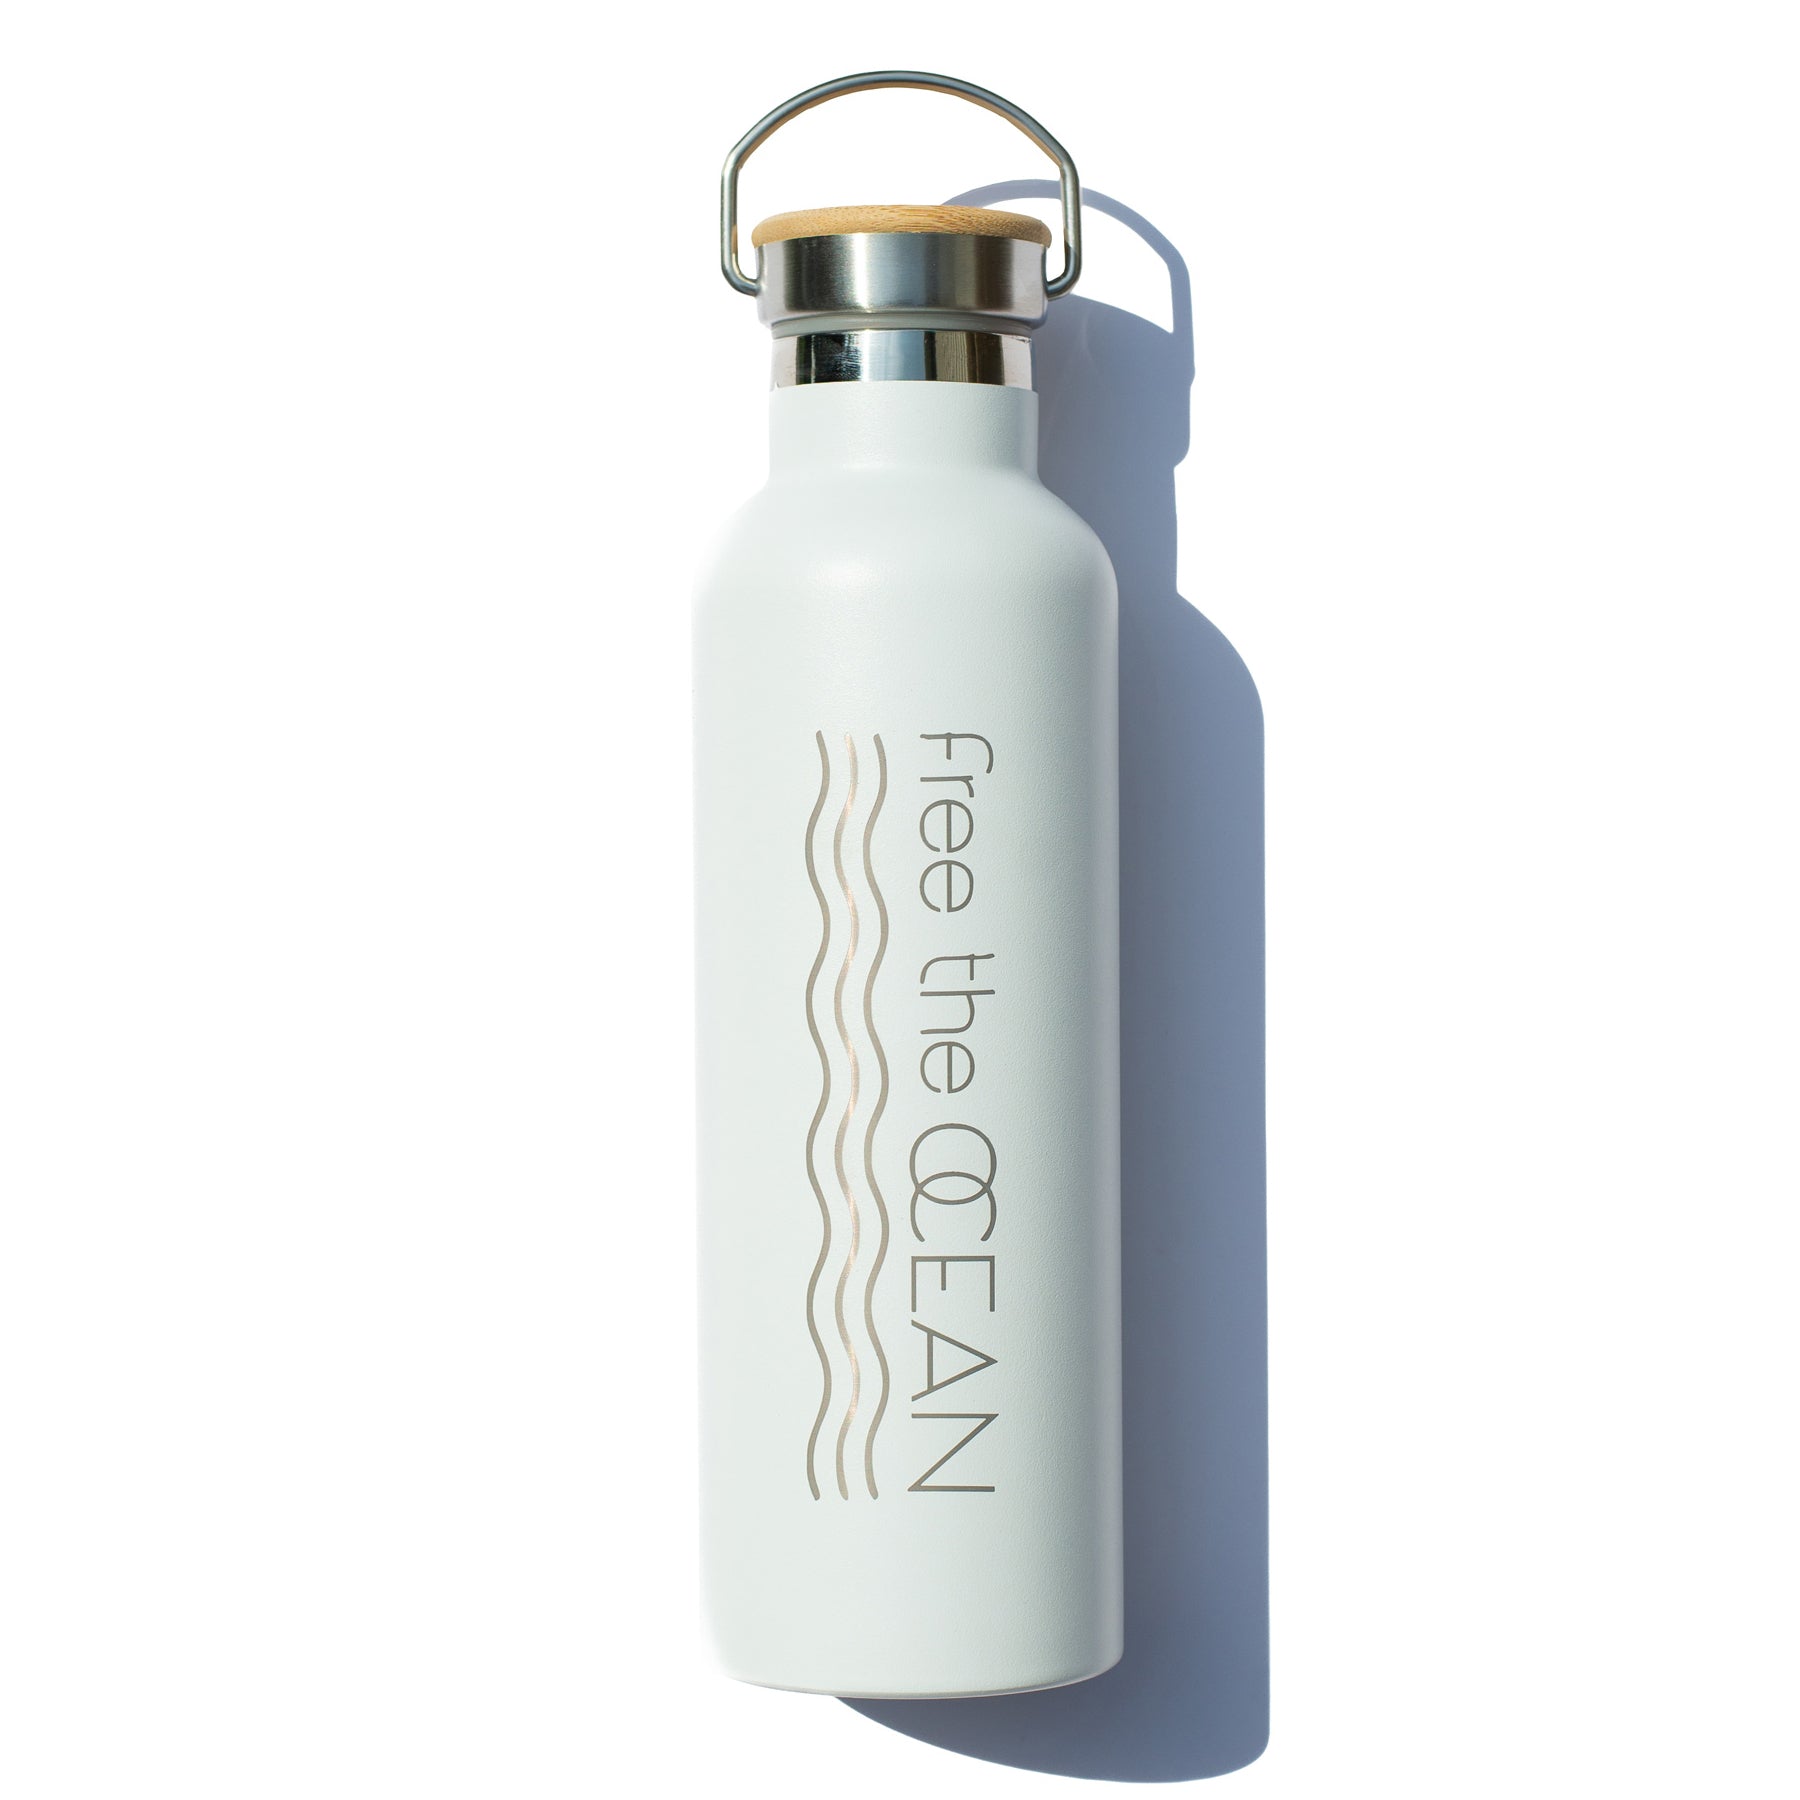 https://shop.freetheocean.com/cdn/shop/files/fto-custom-water-bottle-white-white-background_1.jpg?v=1692904145